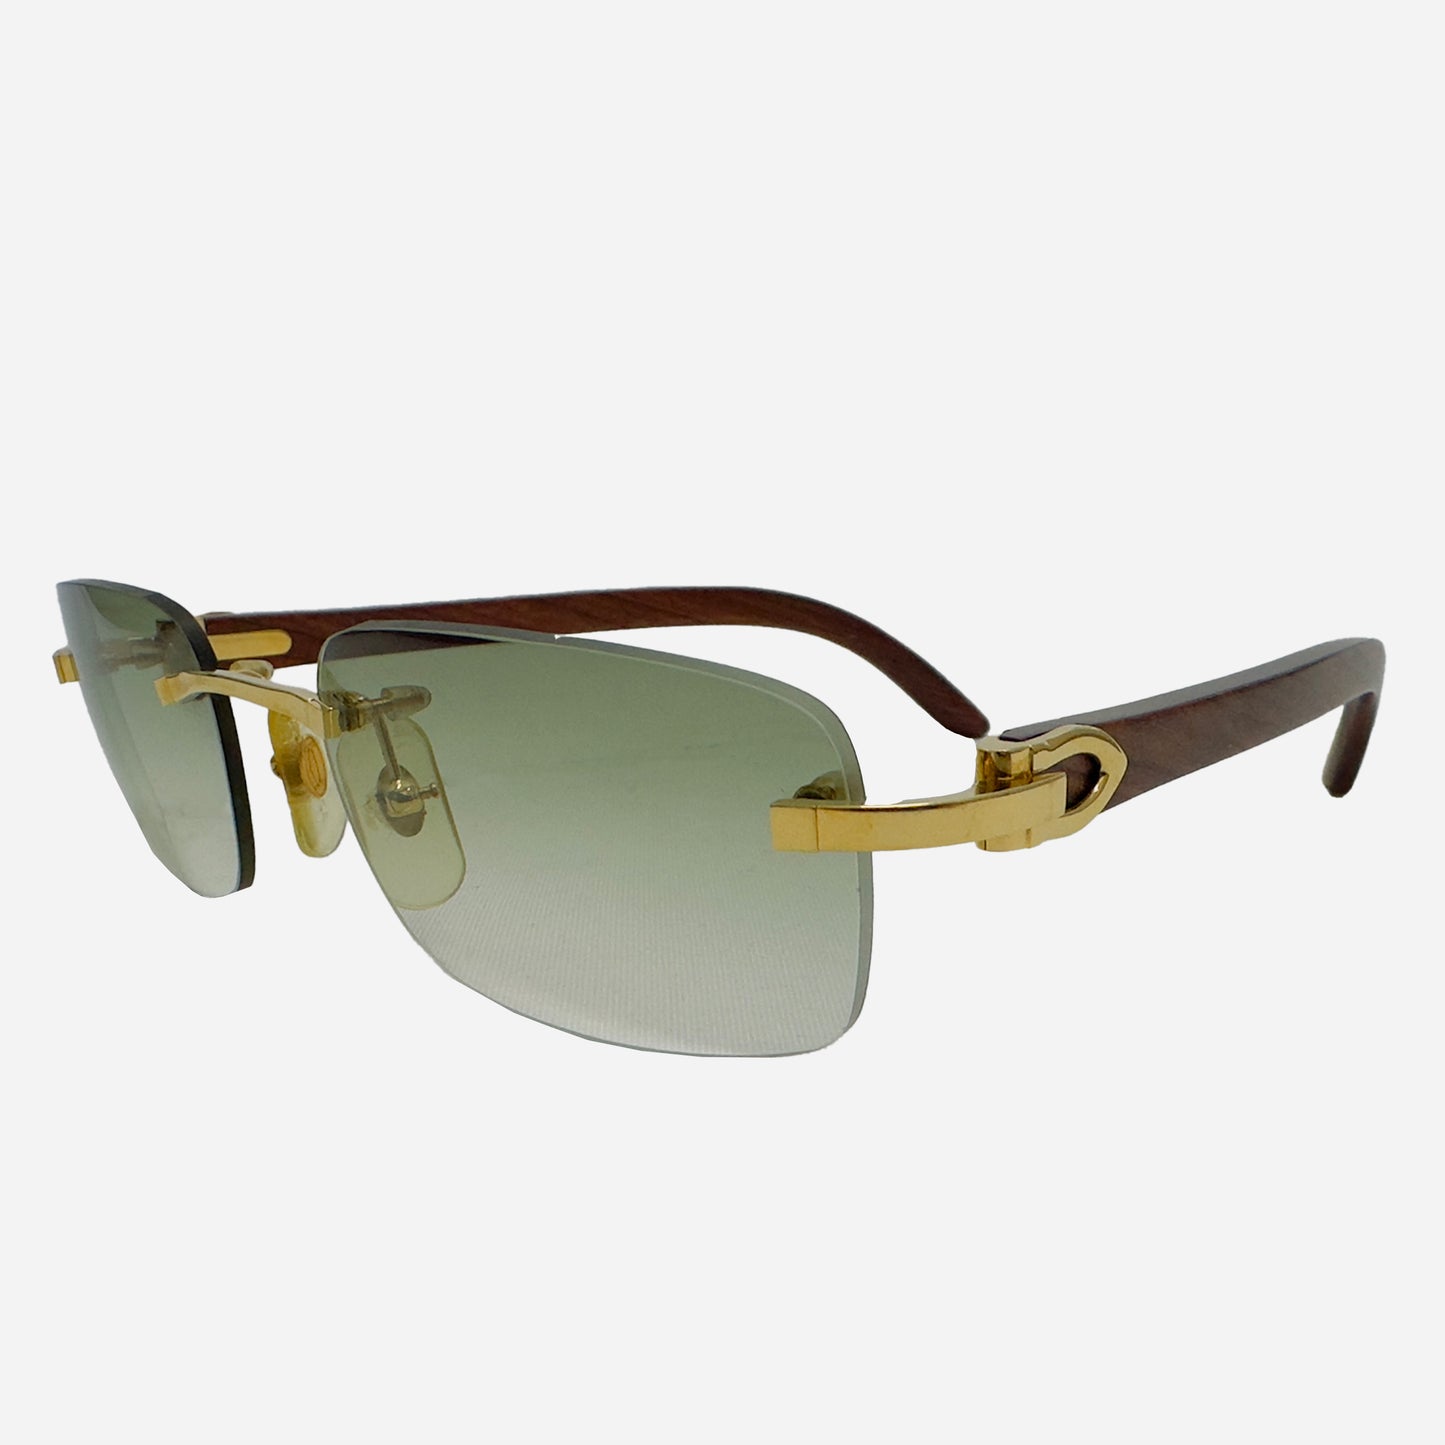 Vintage-Cartier-C-Decor-Bubinga-Wood-Rimless-Rahmenlose-Sonnenbrille-the-seekers-sunglasses-front-side